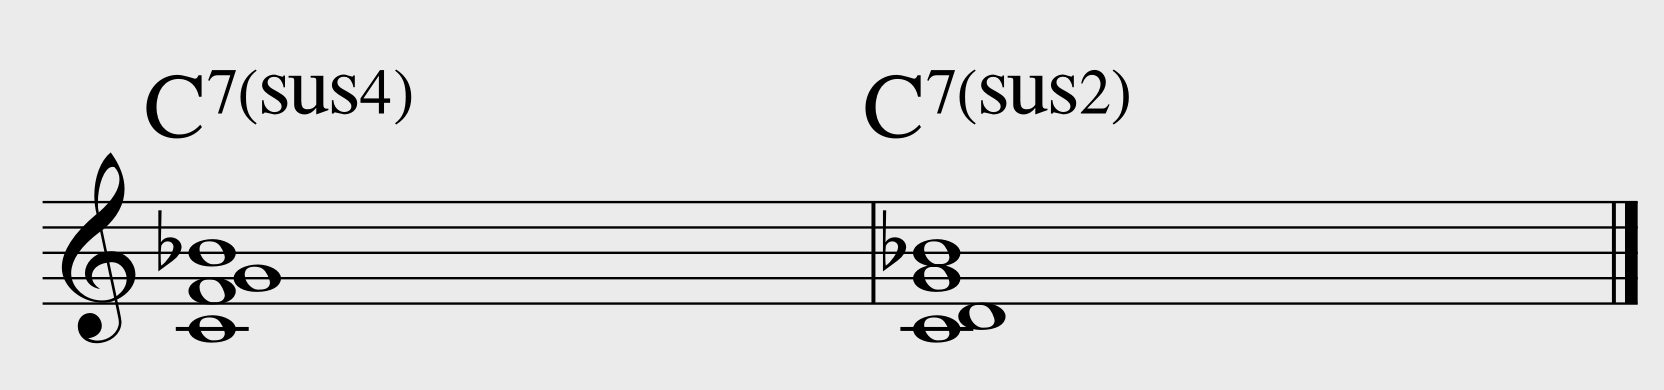 C7(sus4), C7(sus2)